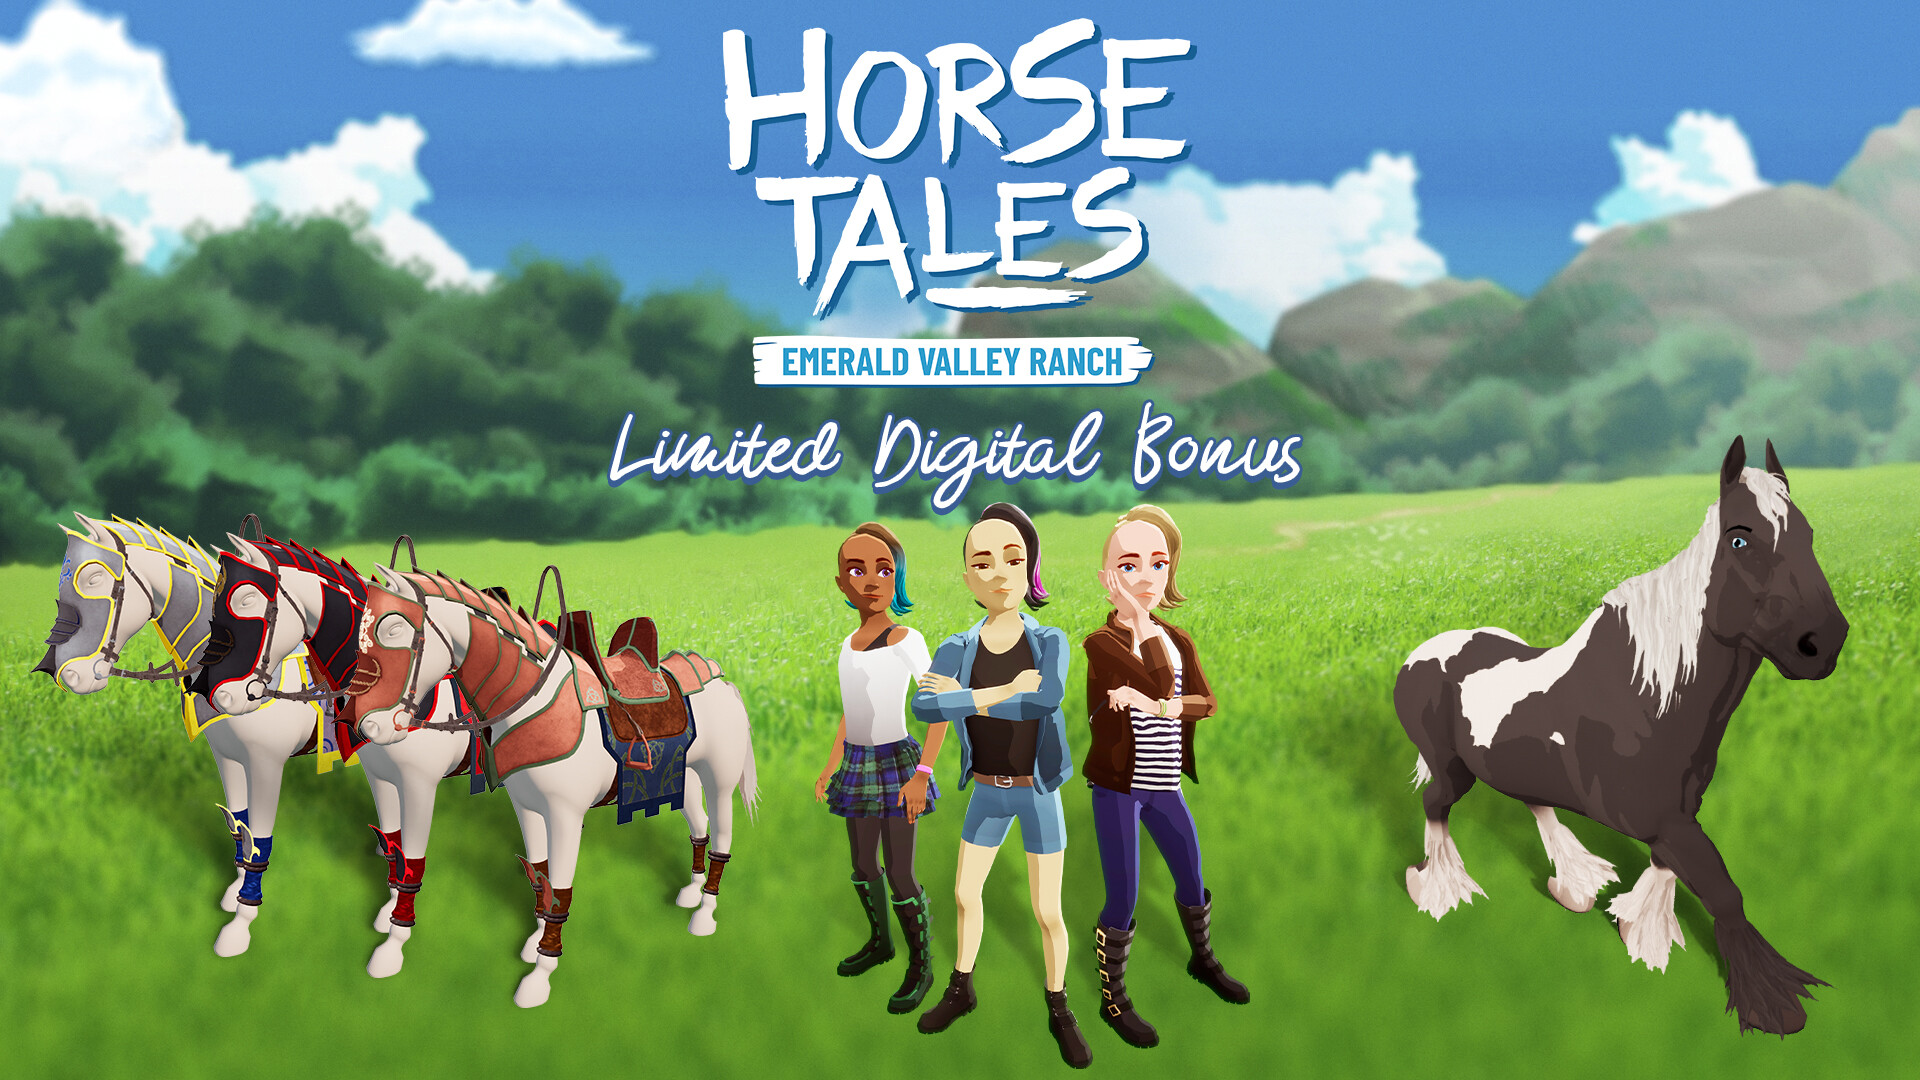 Horse Tales: Emerald Valley Ranch - Limited Digital Bonus DLC EU PS4 CD Key 3.38 usd